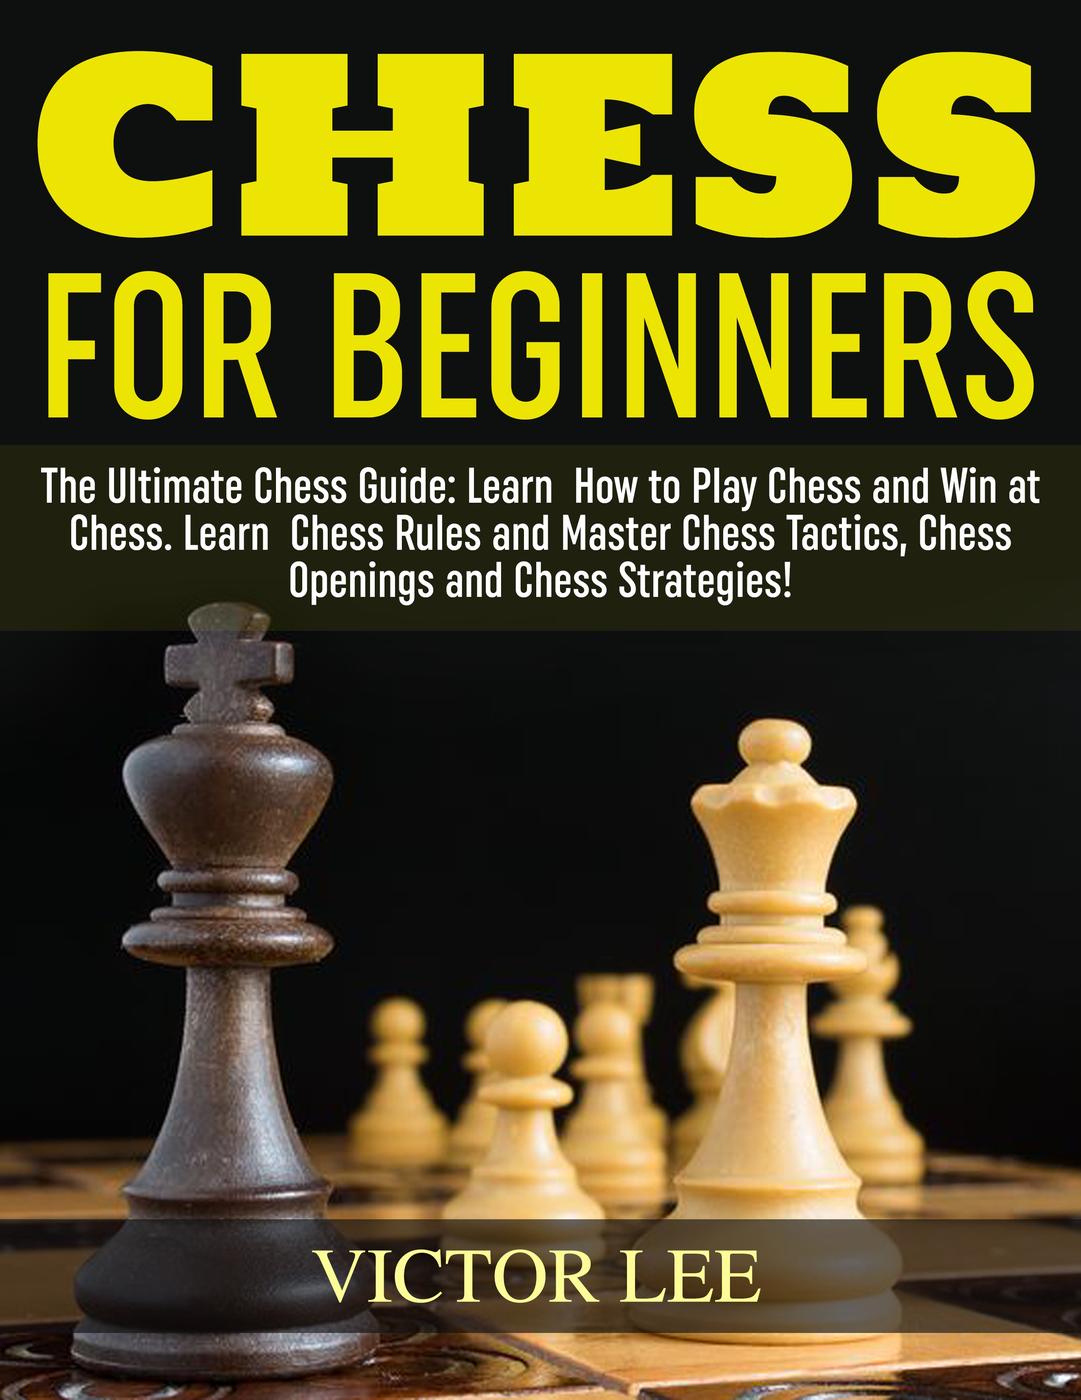 online beginner chess lessons